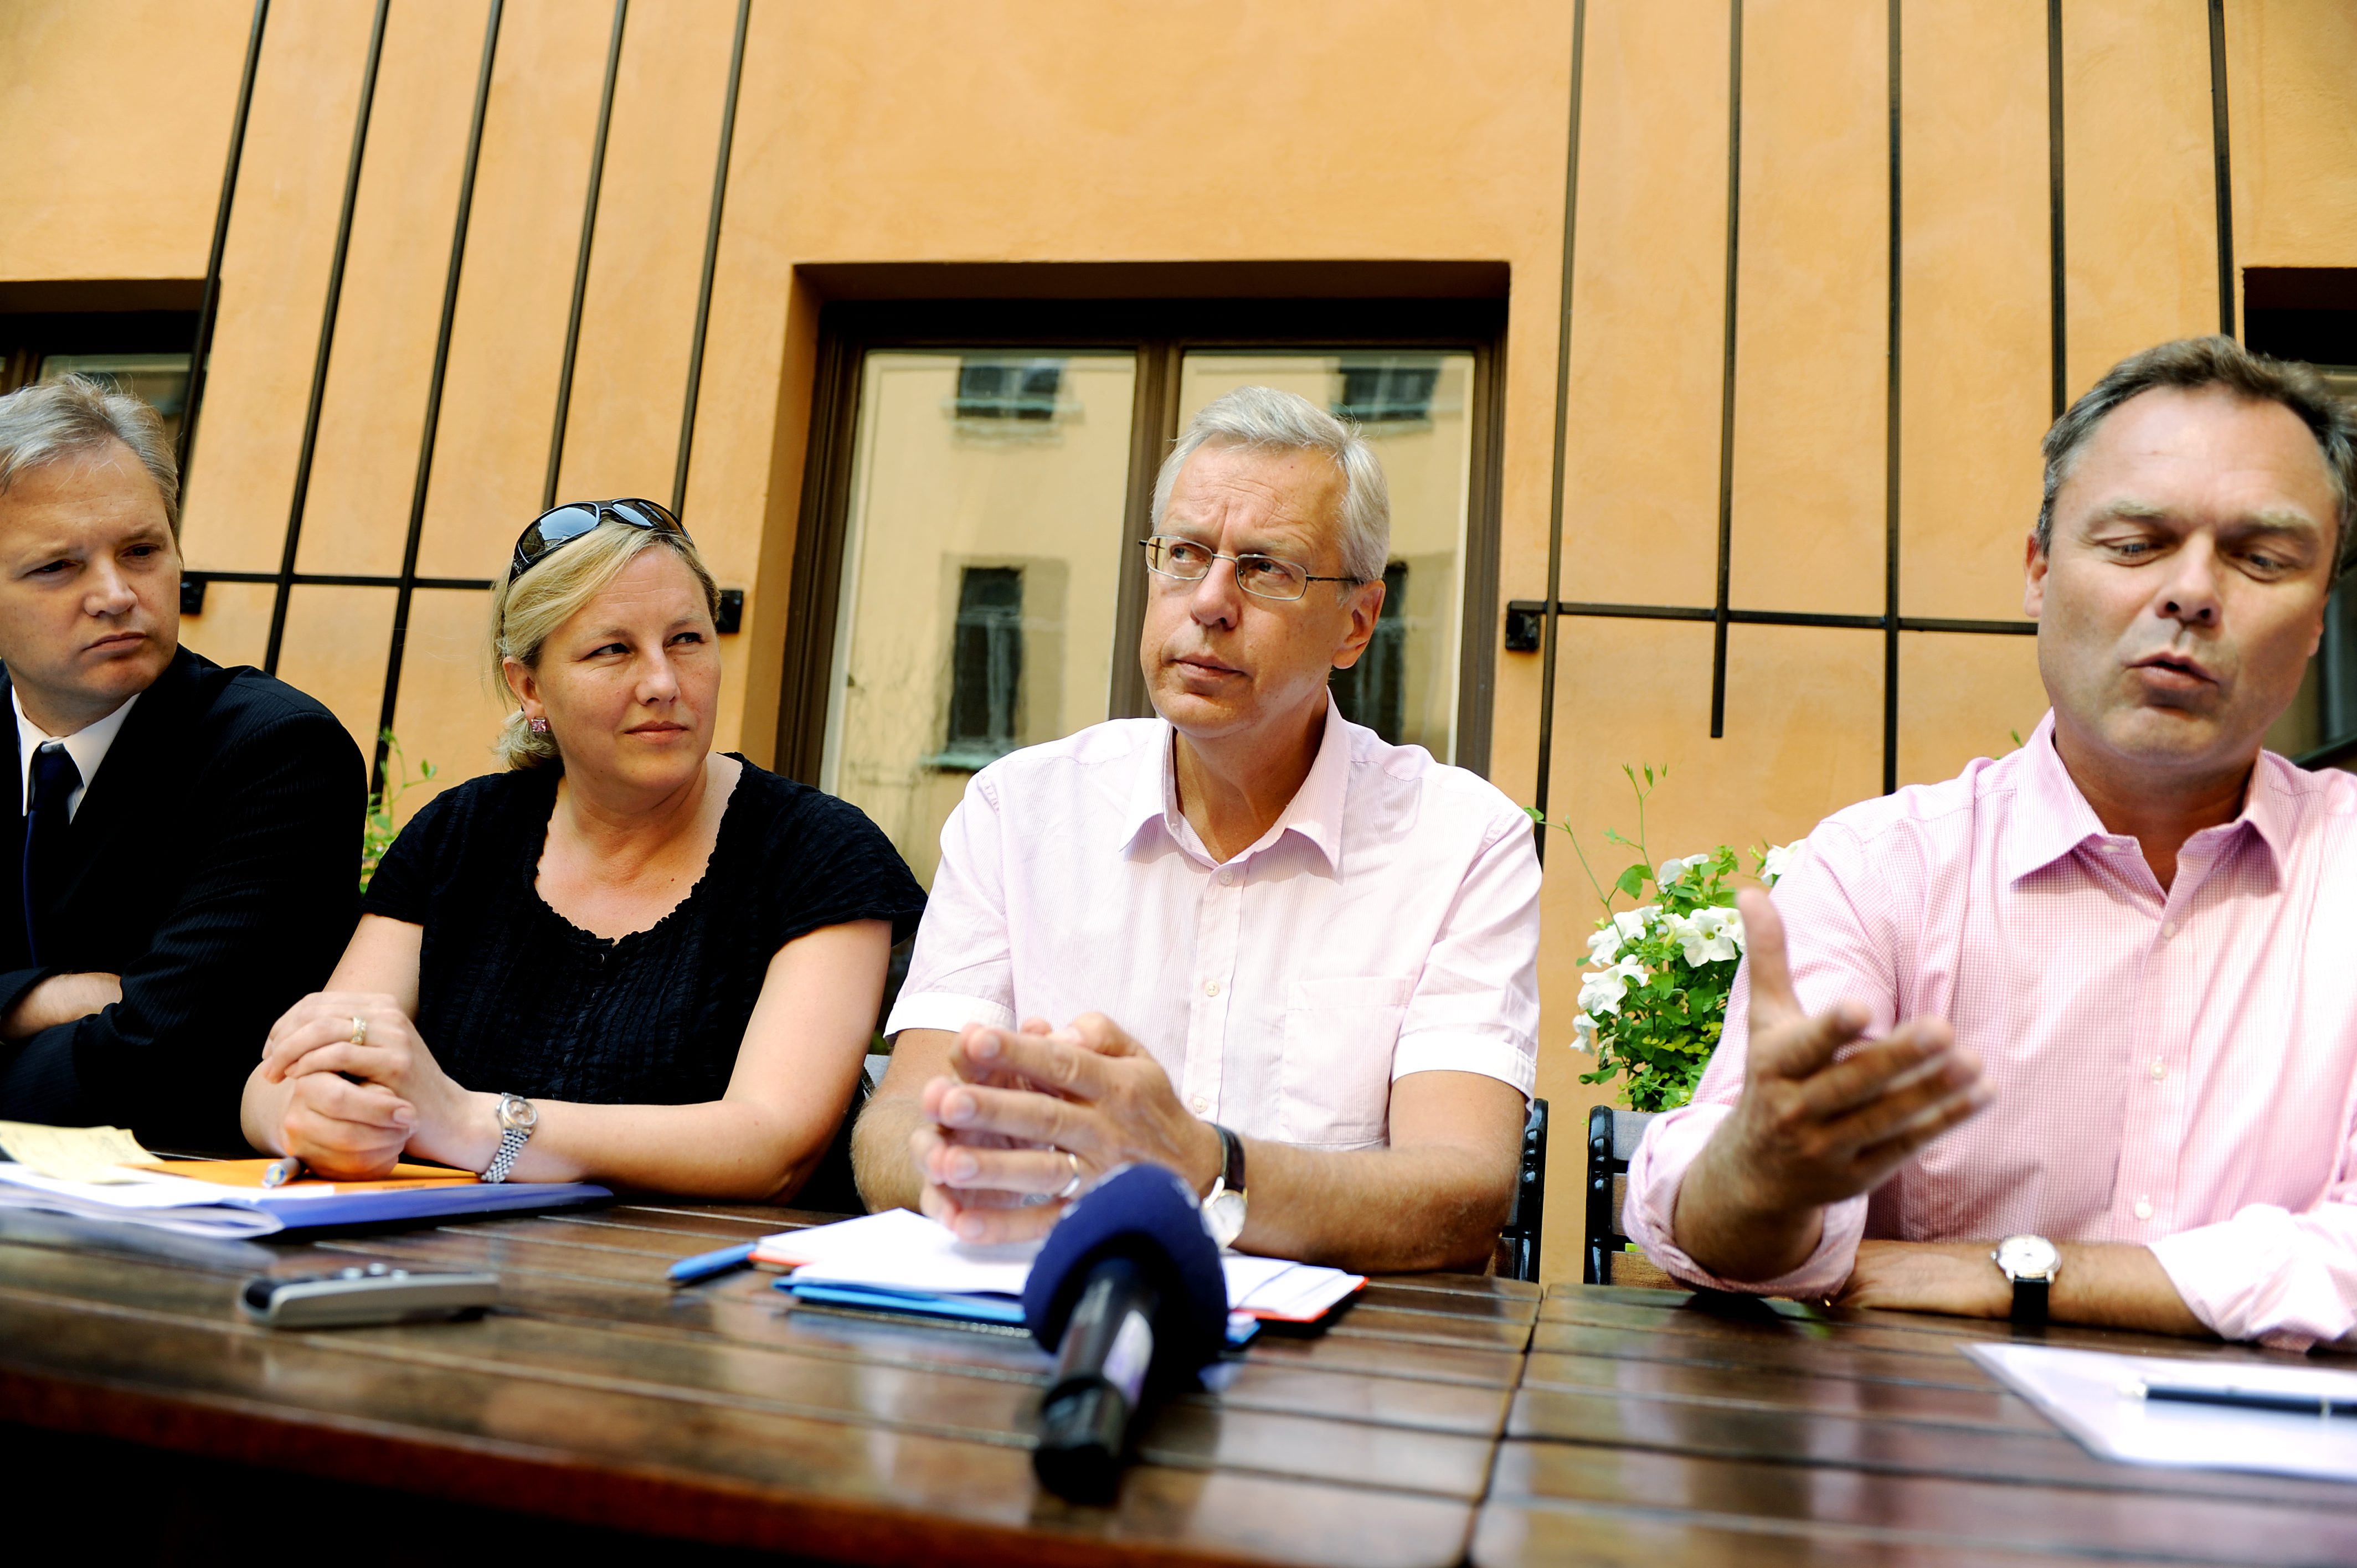 Sten Tolgfors, Jan Björklund, Liberalerna, Moderaterna, Riksdagsvalet 2010